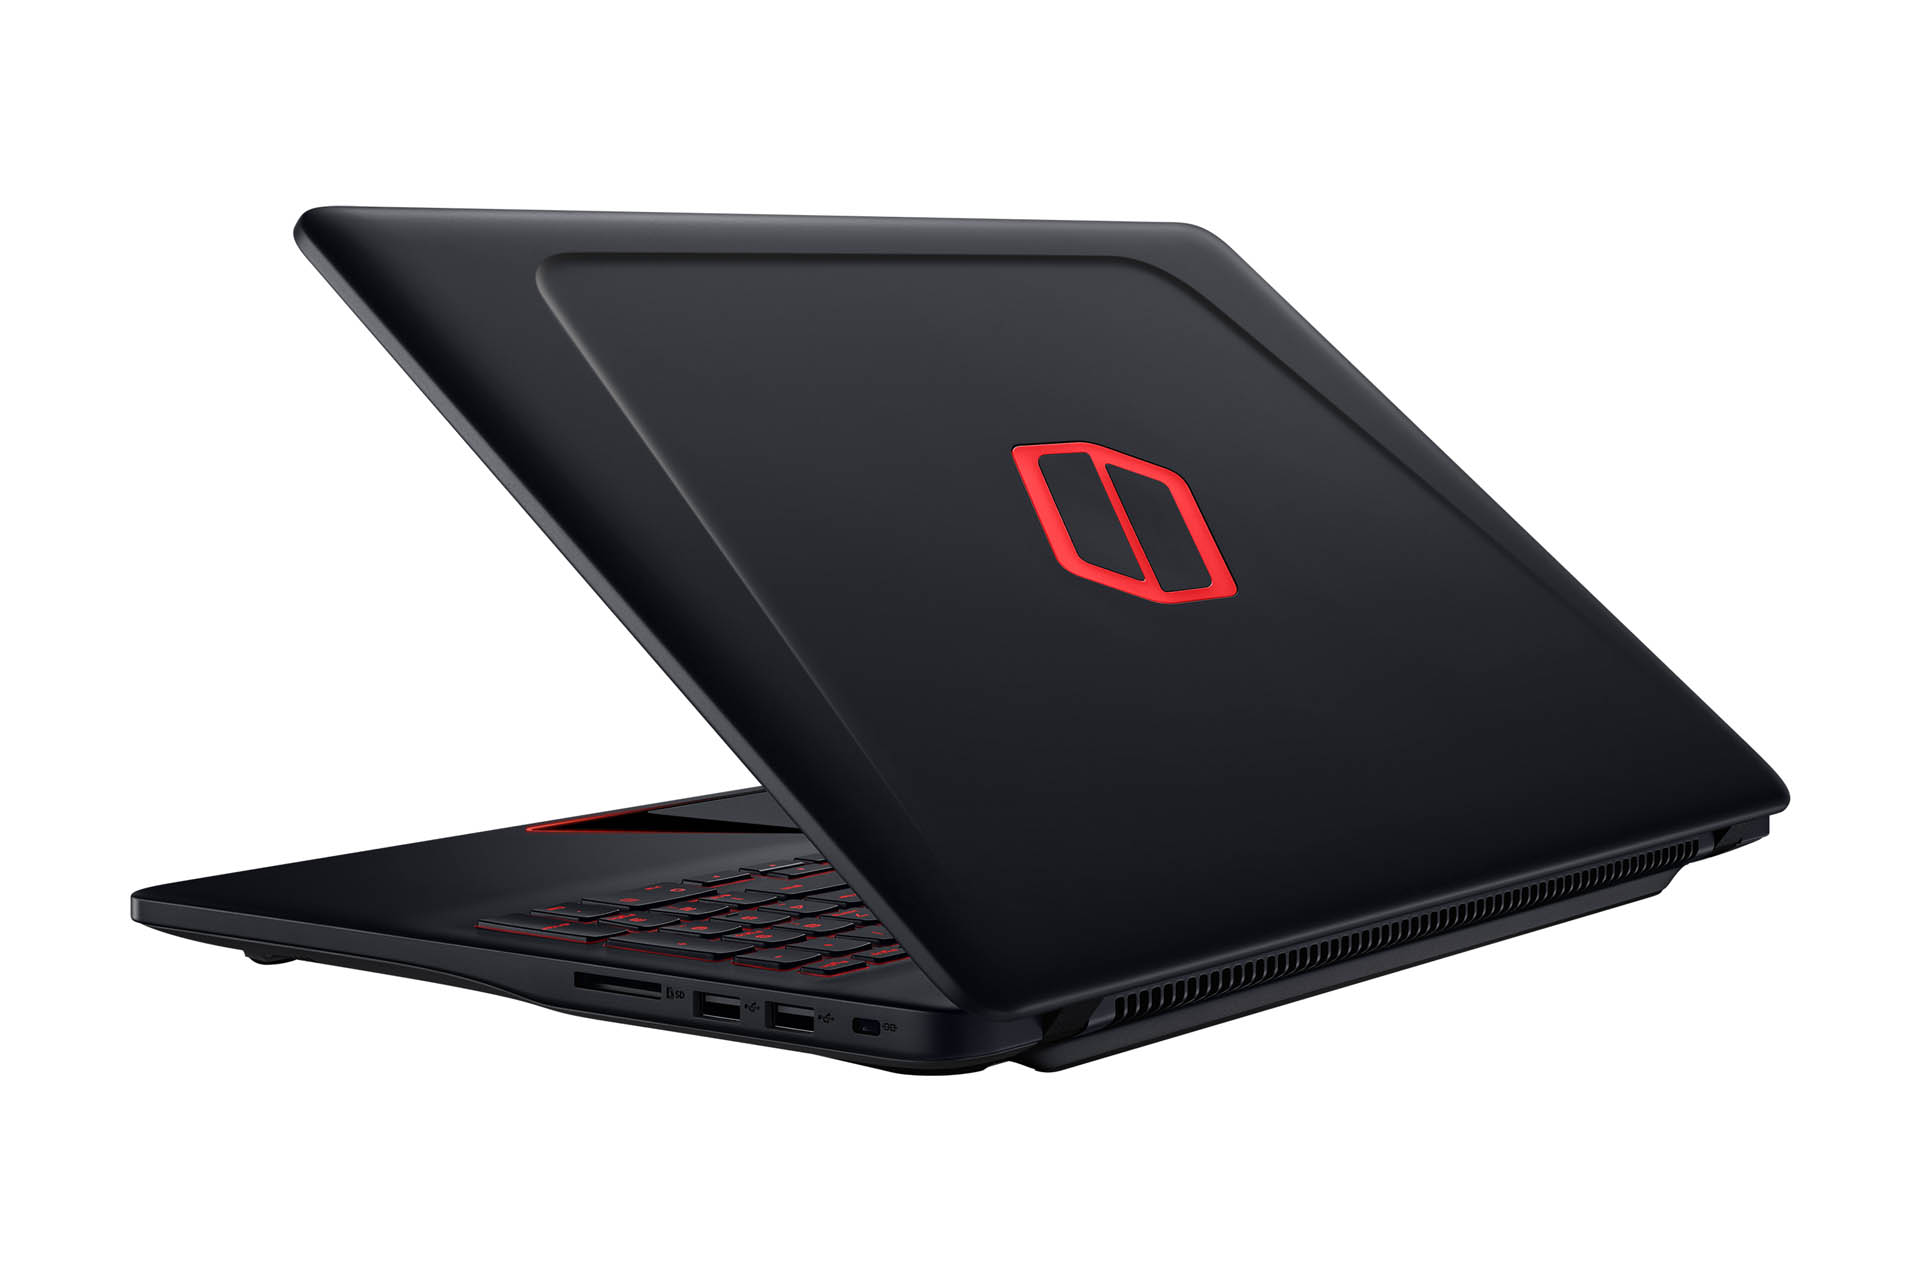 Conheça o notebook “Samsung Odyssey” o laptop feito especialmente para você